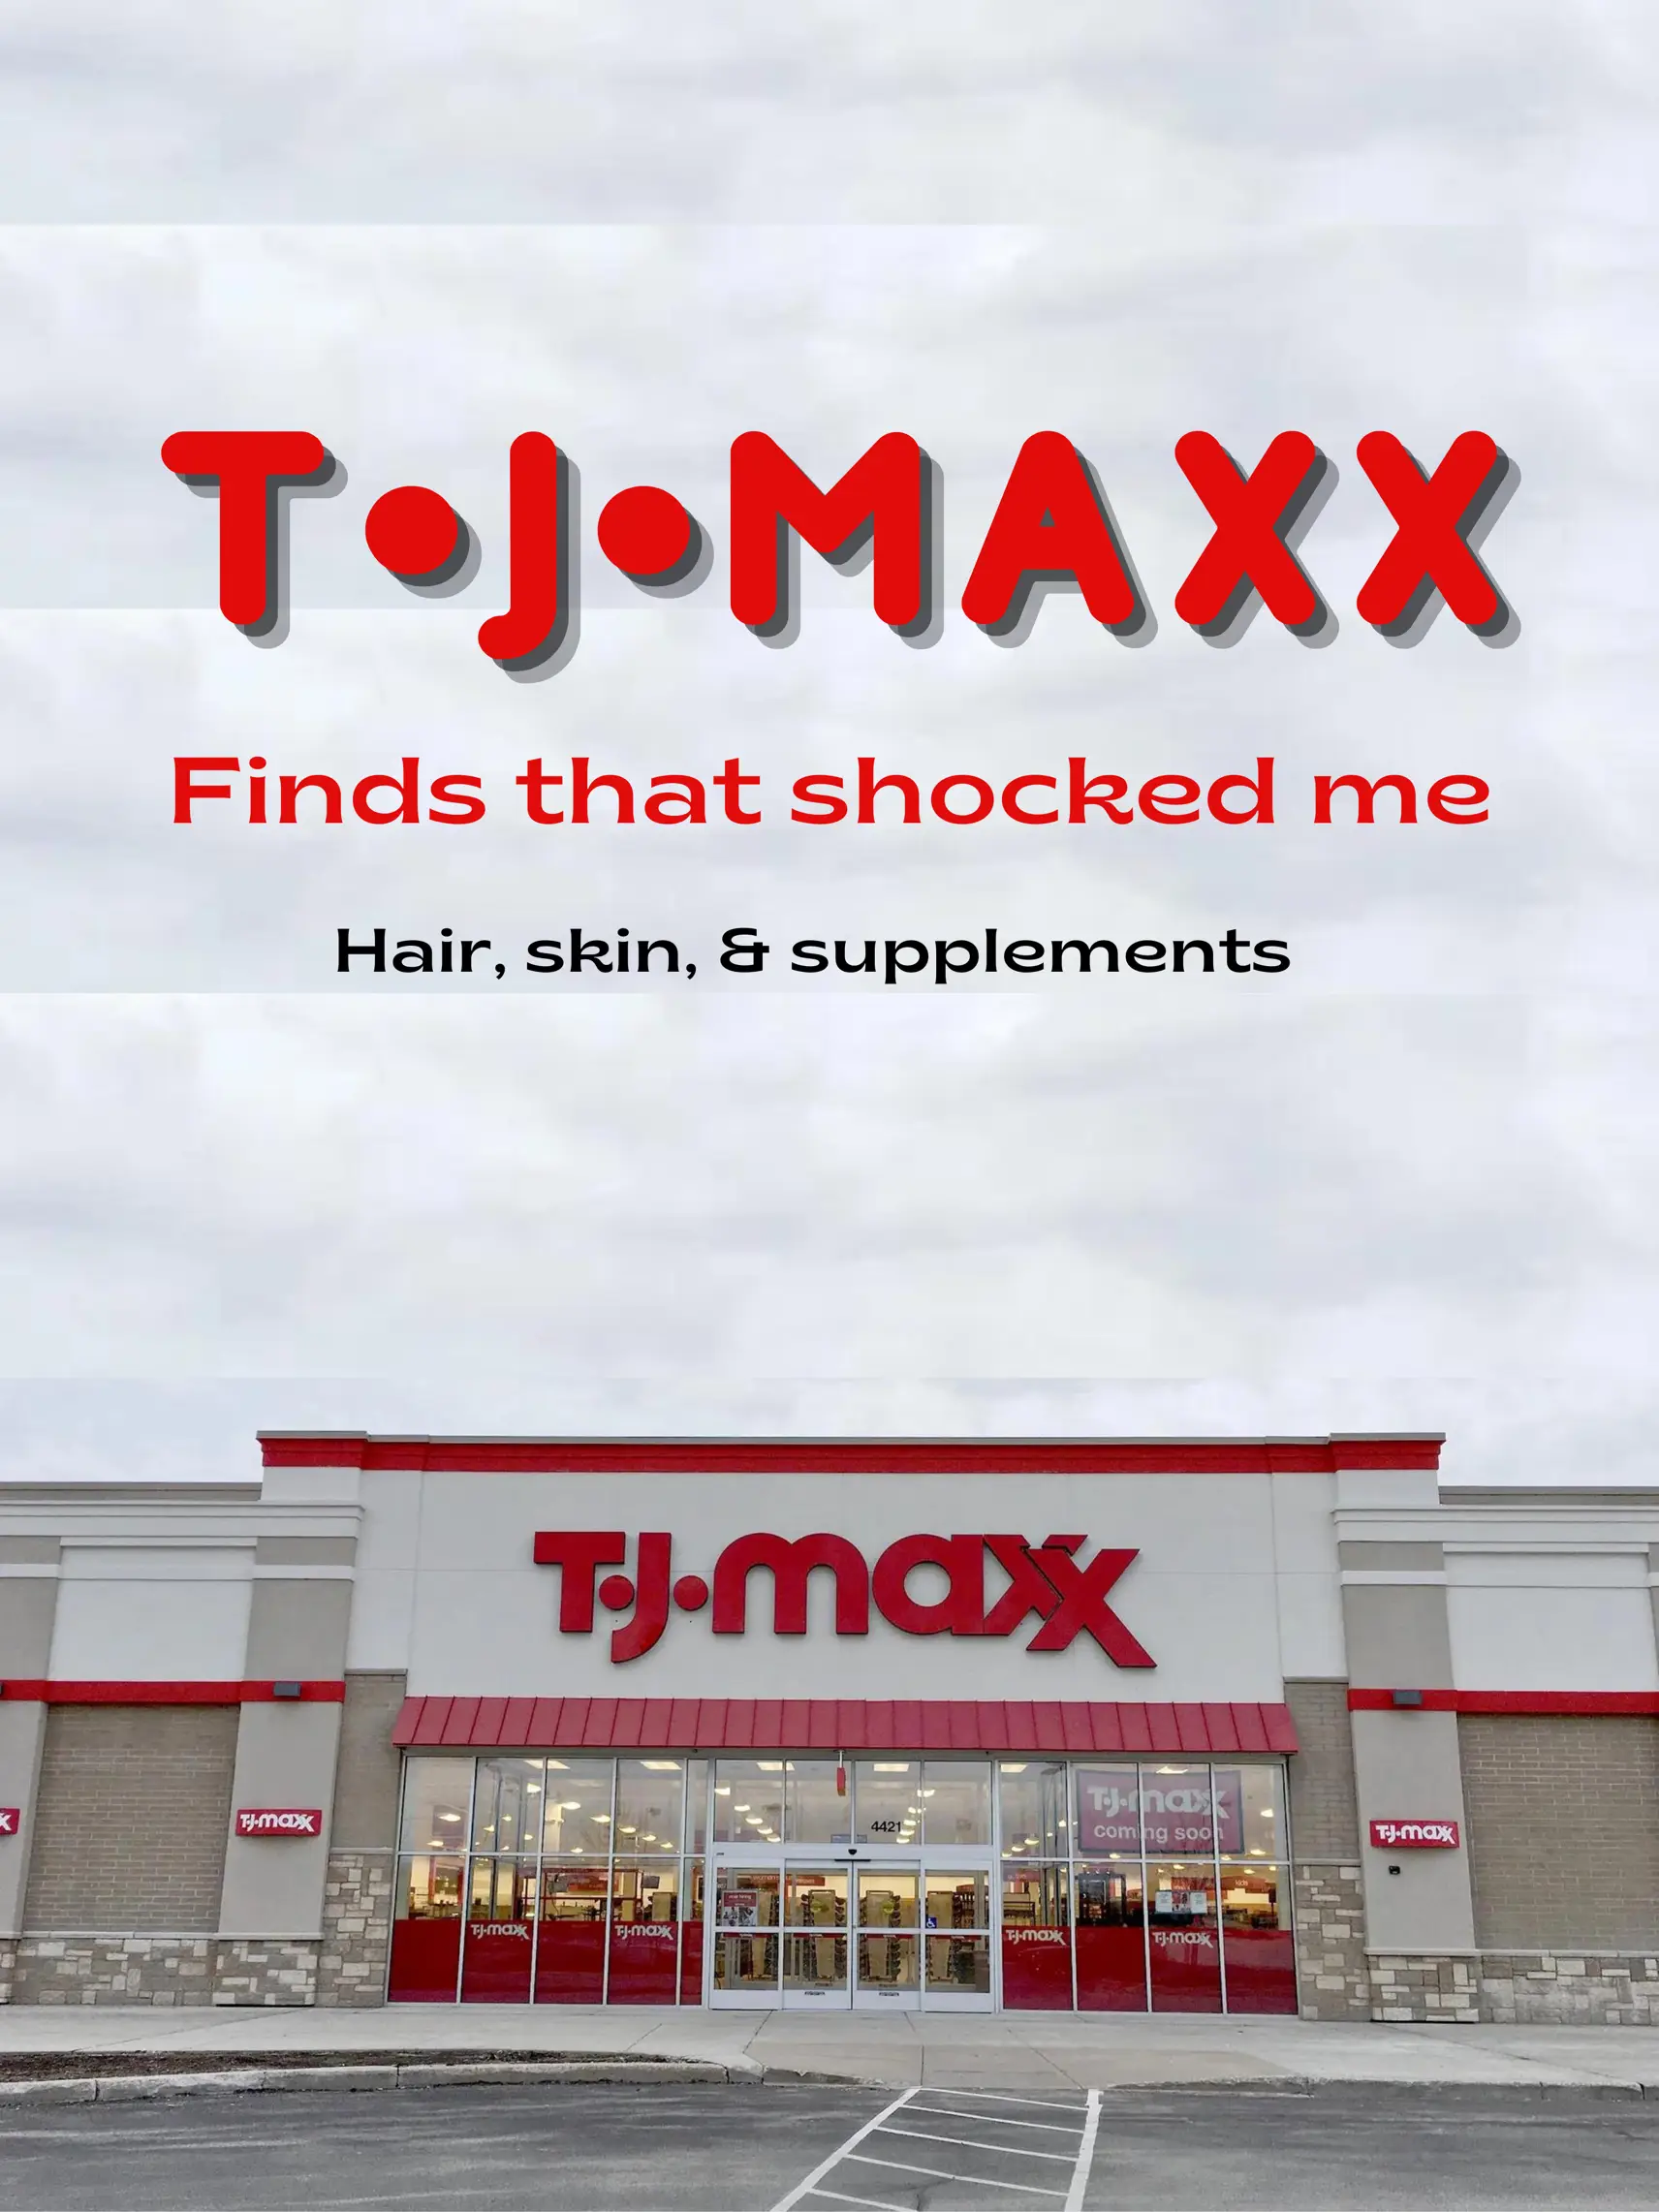 What's new @T.J.Maxx? Steve Madden purses! #tjmaxx #tjmaxxfinds